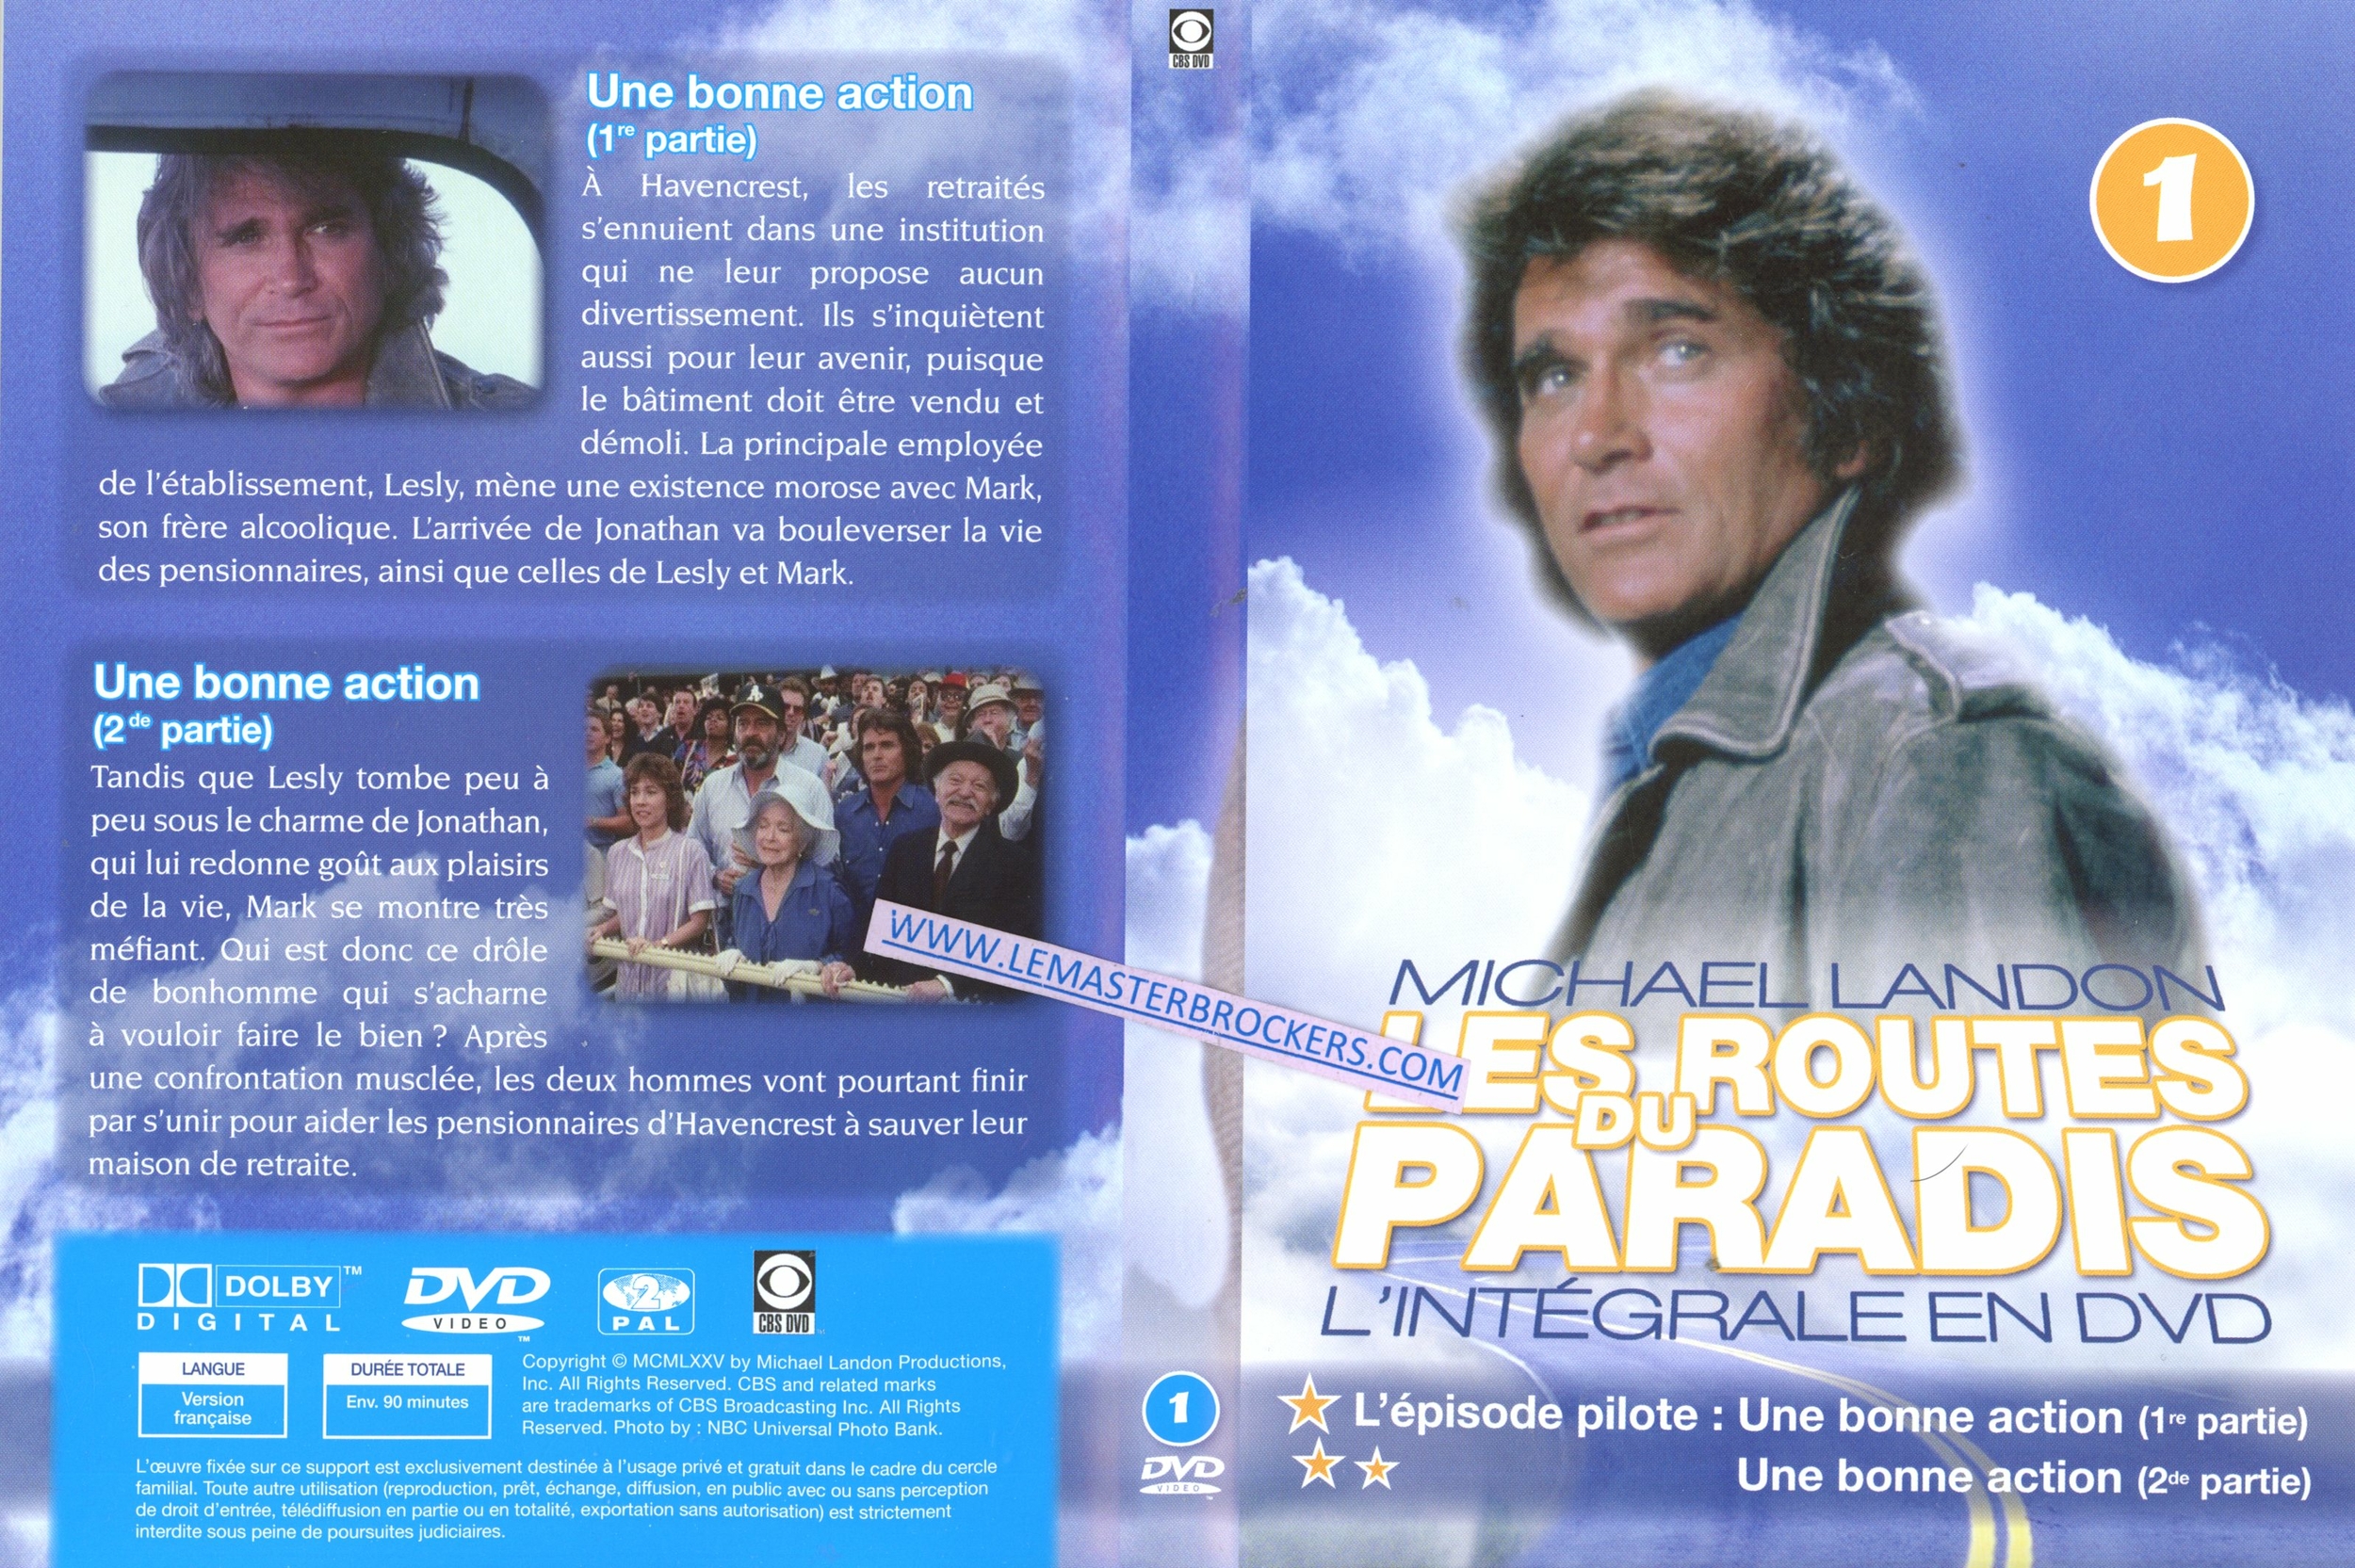 MICHAEL LANDON LES ROUTES DU PARADIS L'INTEGRALE EN DVD